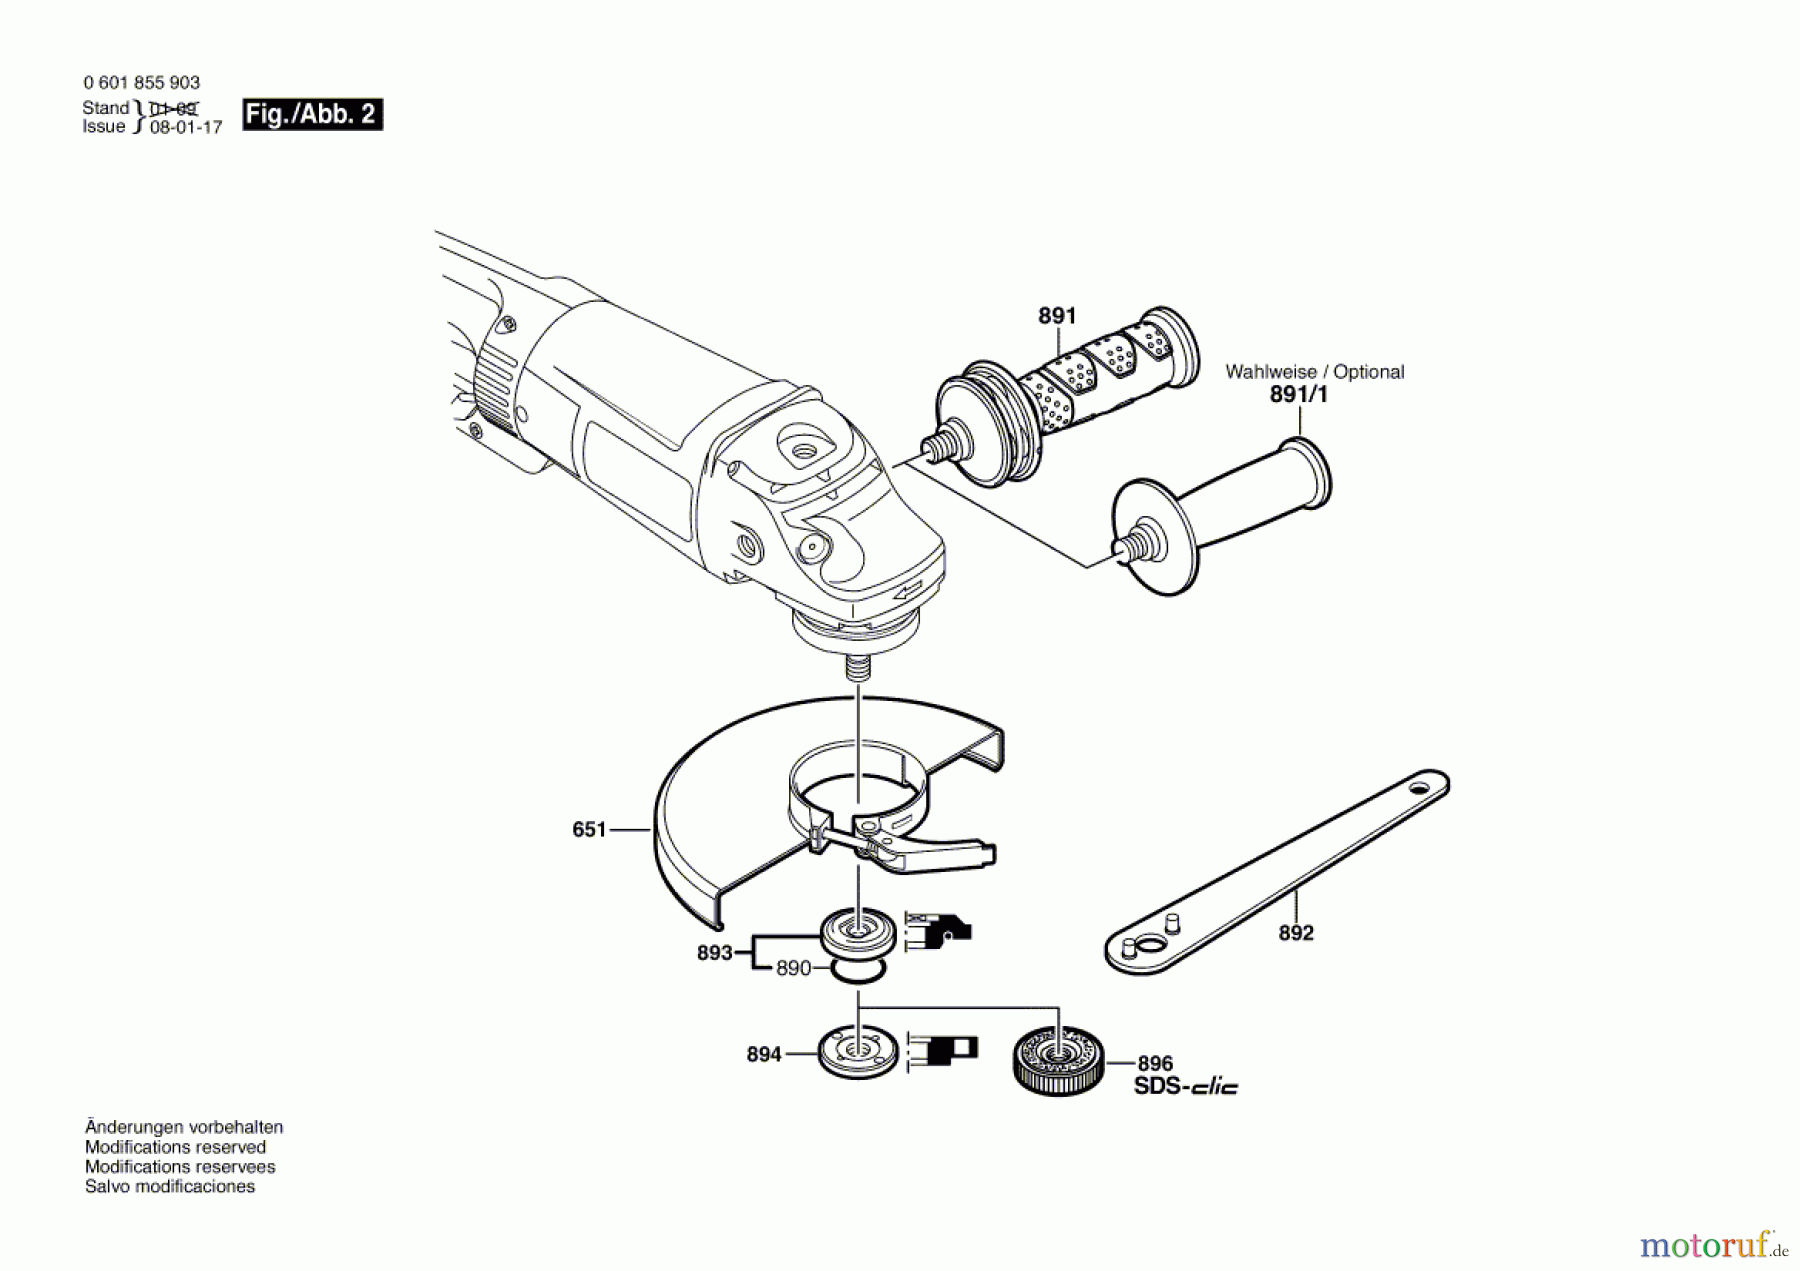  Bosch Werkzeug Winkelschleifer GWS 26-180 JB Seite 2